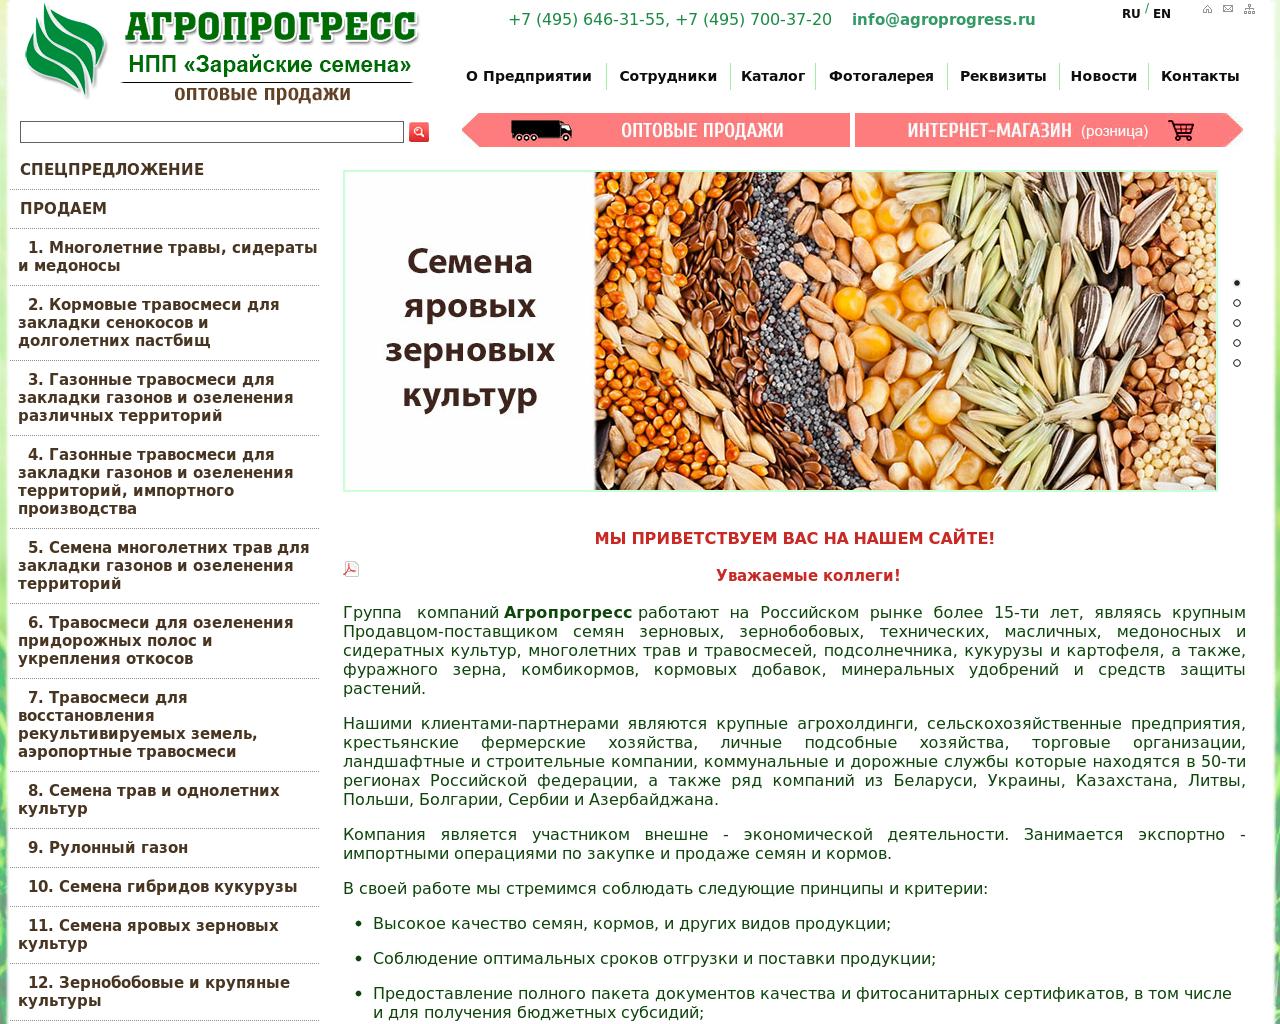 Изображение сайта agroprogress.ru в разрешении 1280x1024